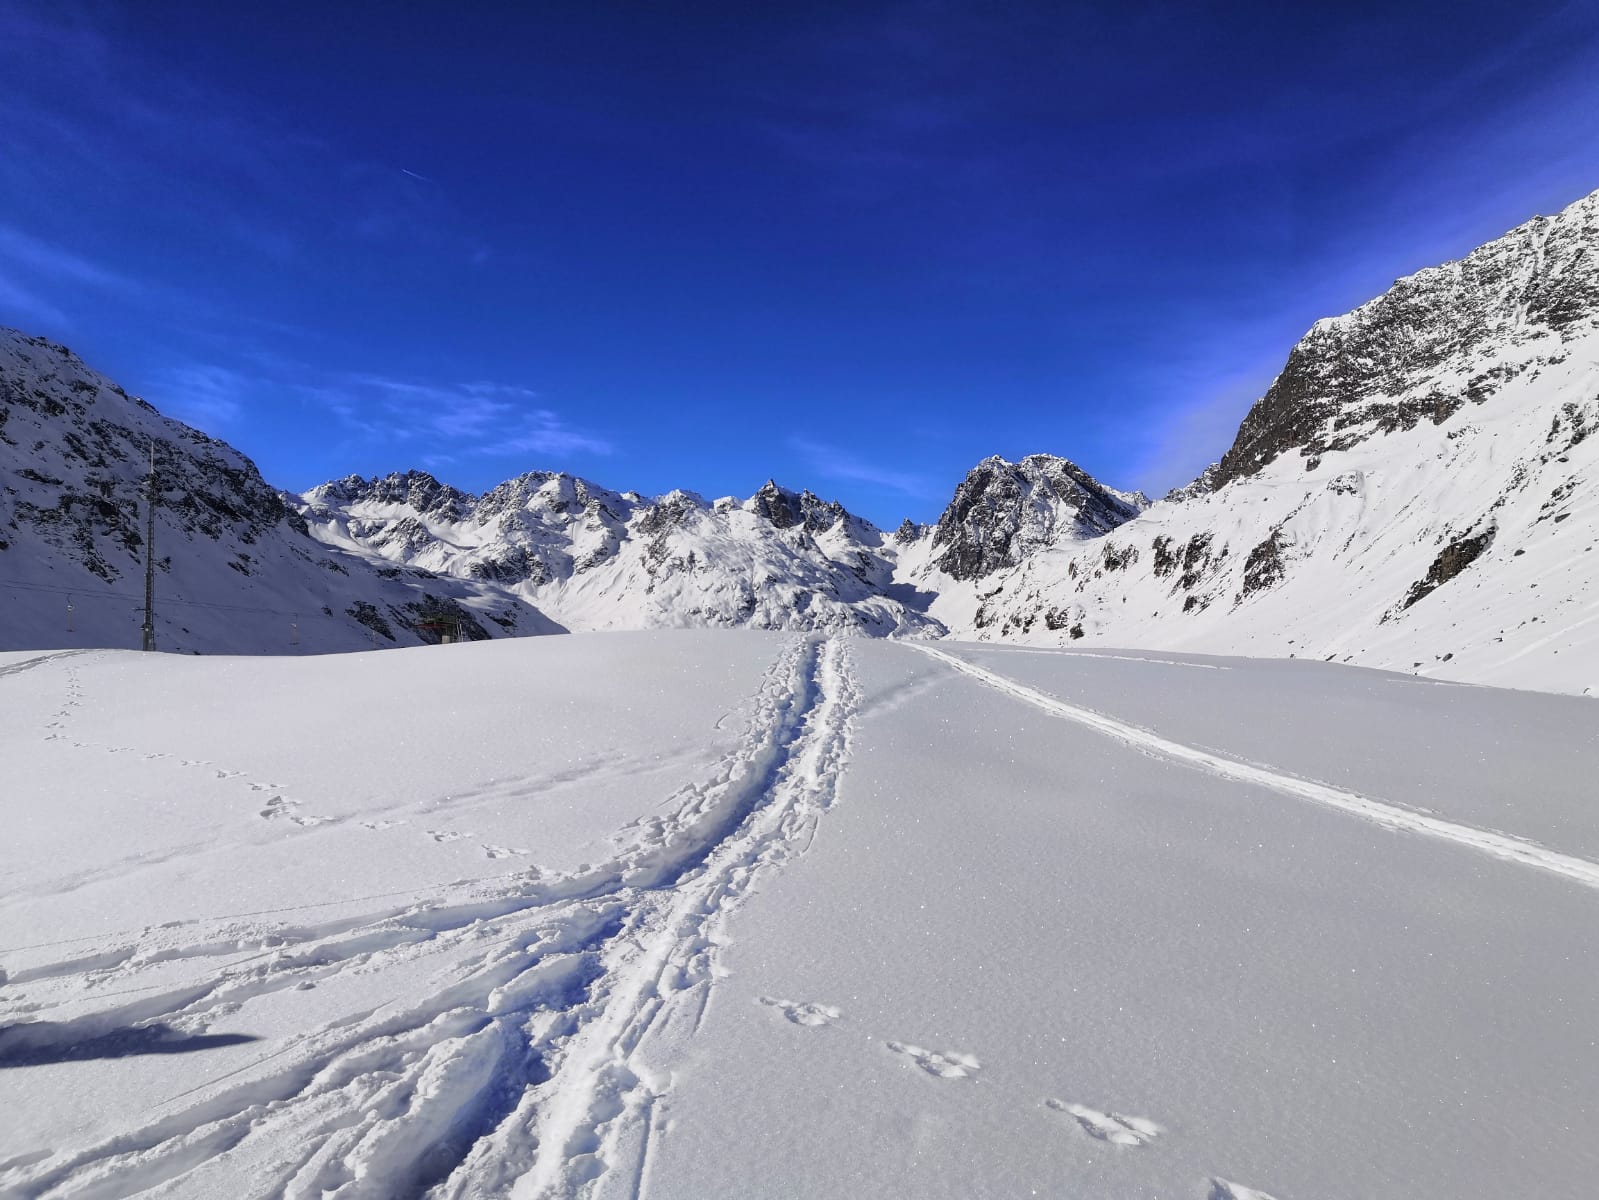 Schneeschuhwanderung zum Silvrettasee_ neue Spuren ziehen_(c) mateoundelena